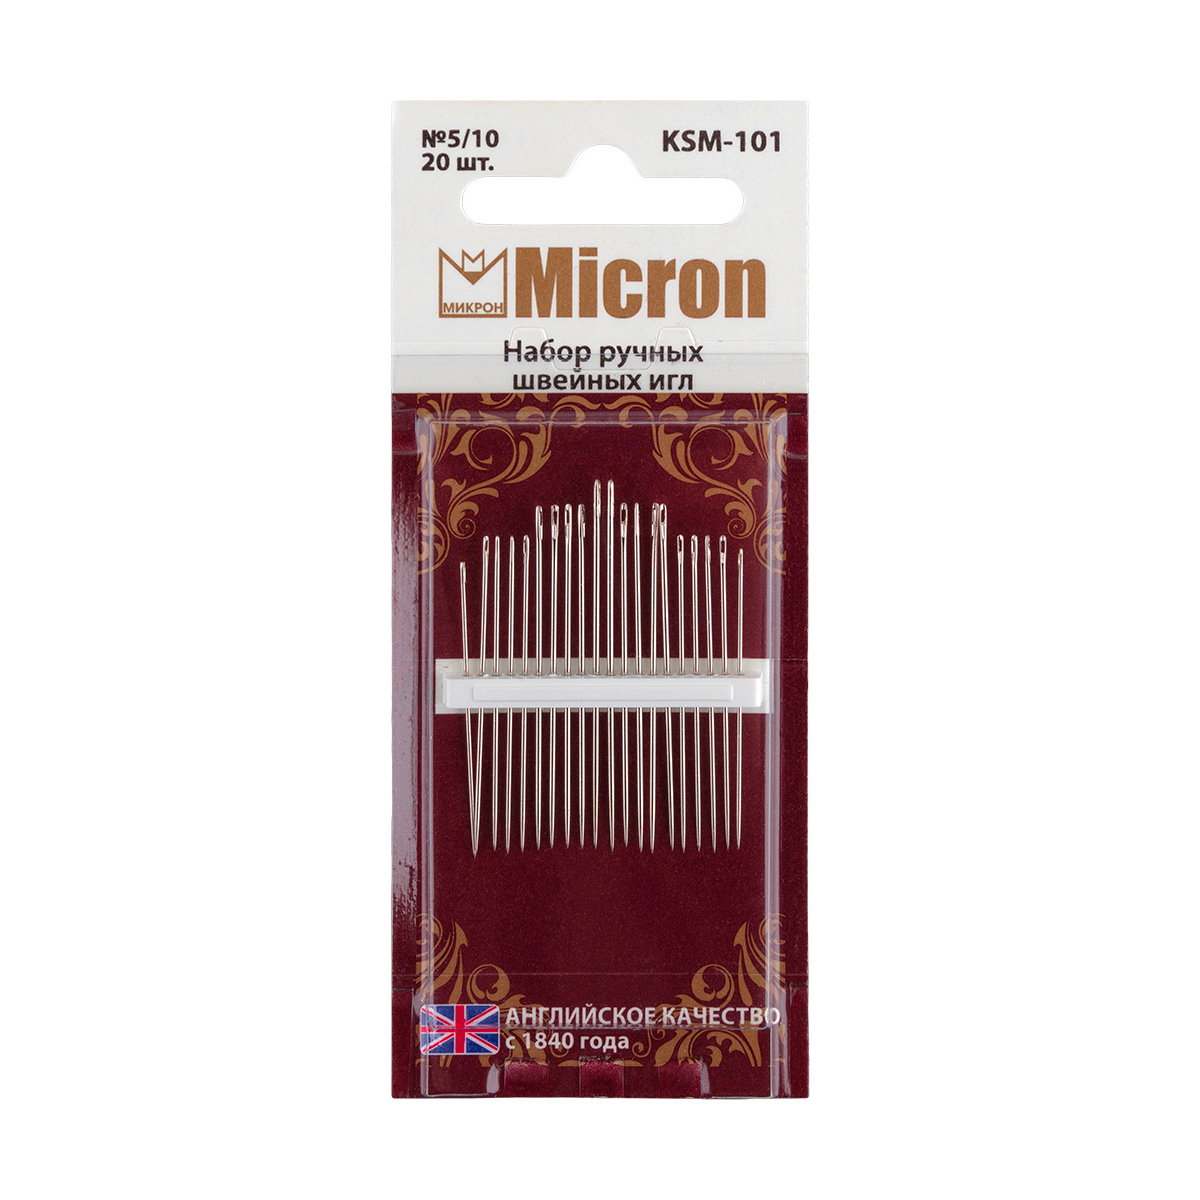 Иглы для шитья ручные "Micron" KSM-101